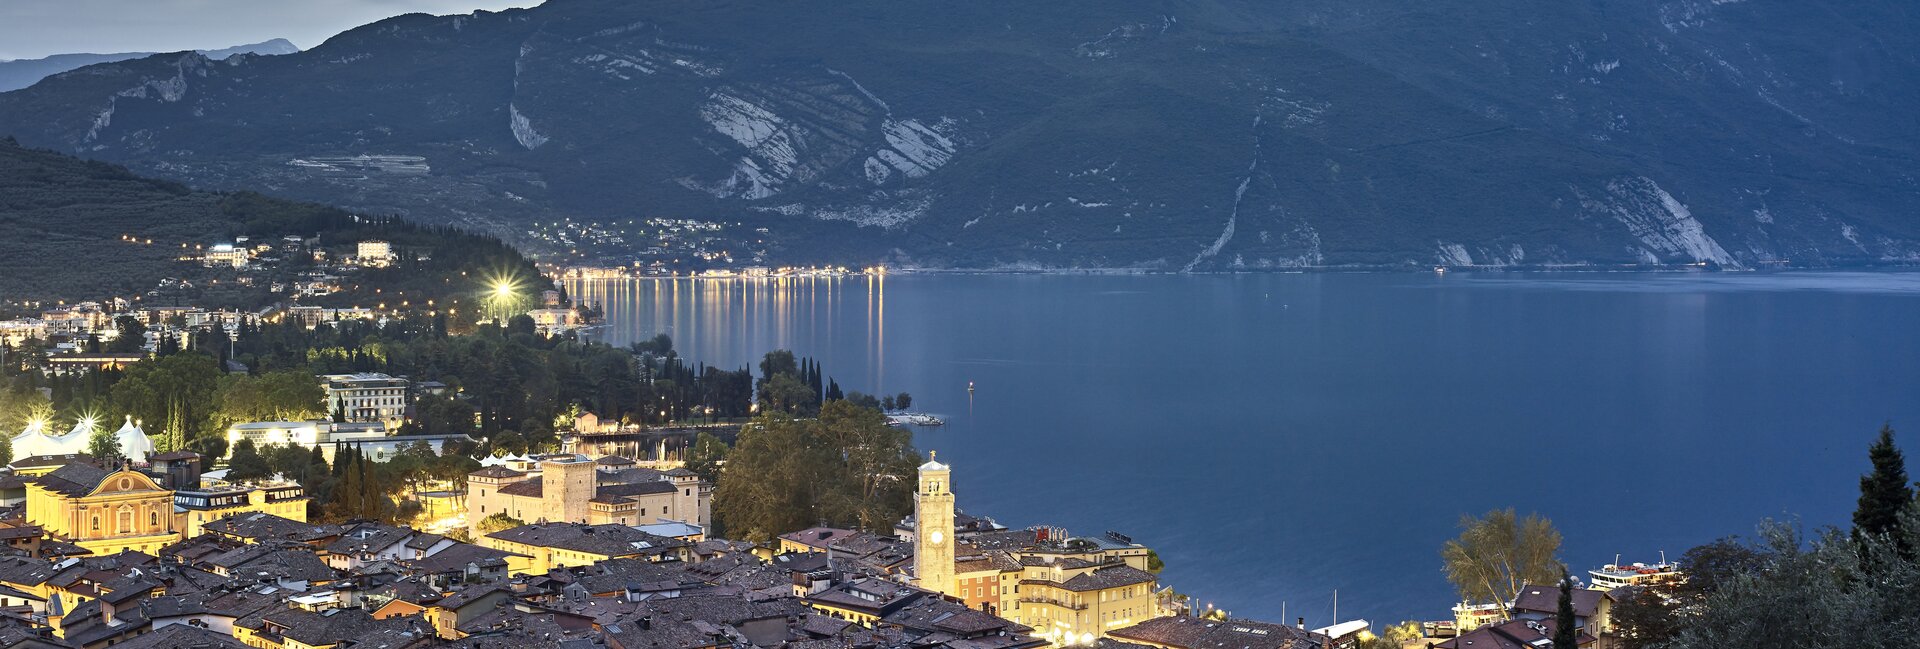 Garda Trentino - Riva del Garda - Panorama
